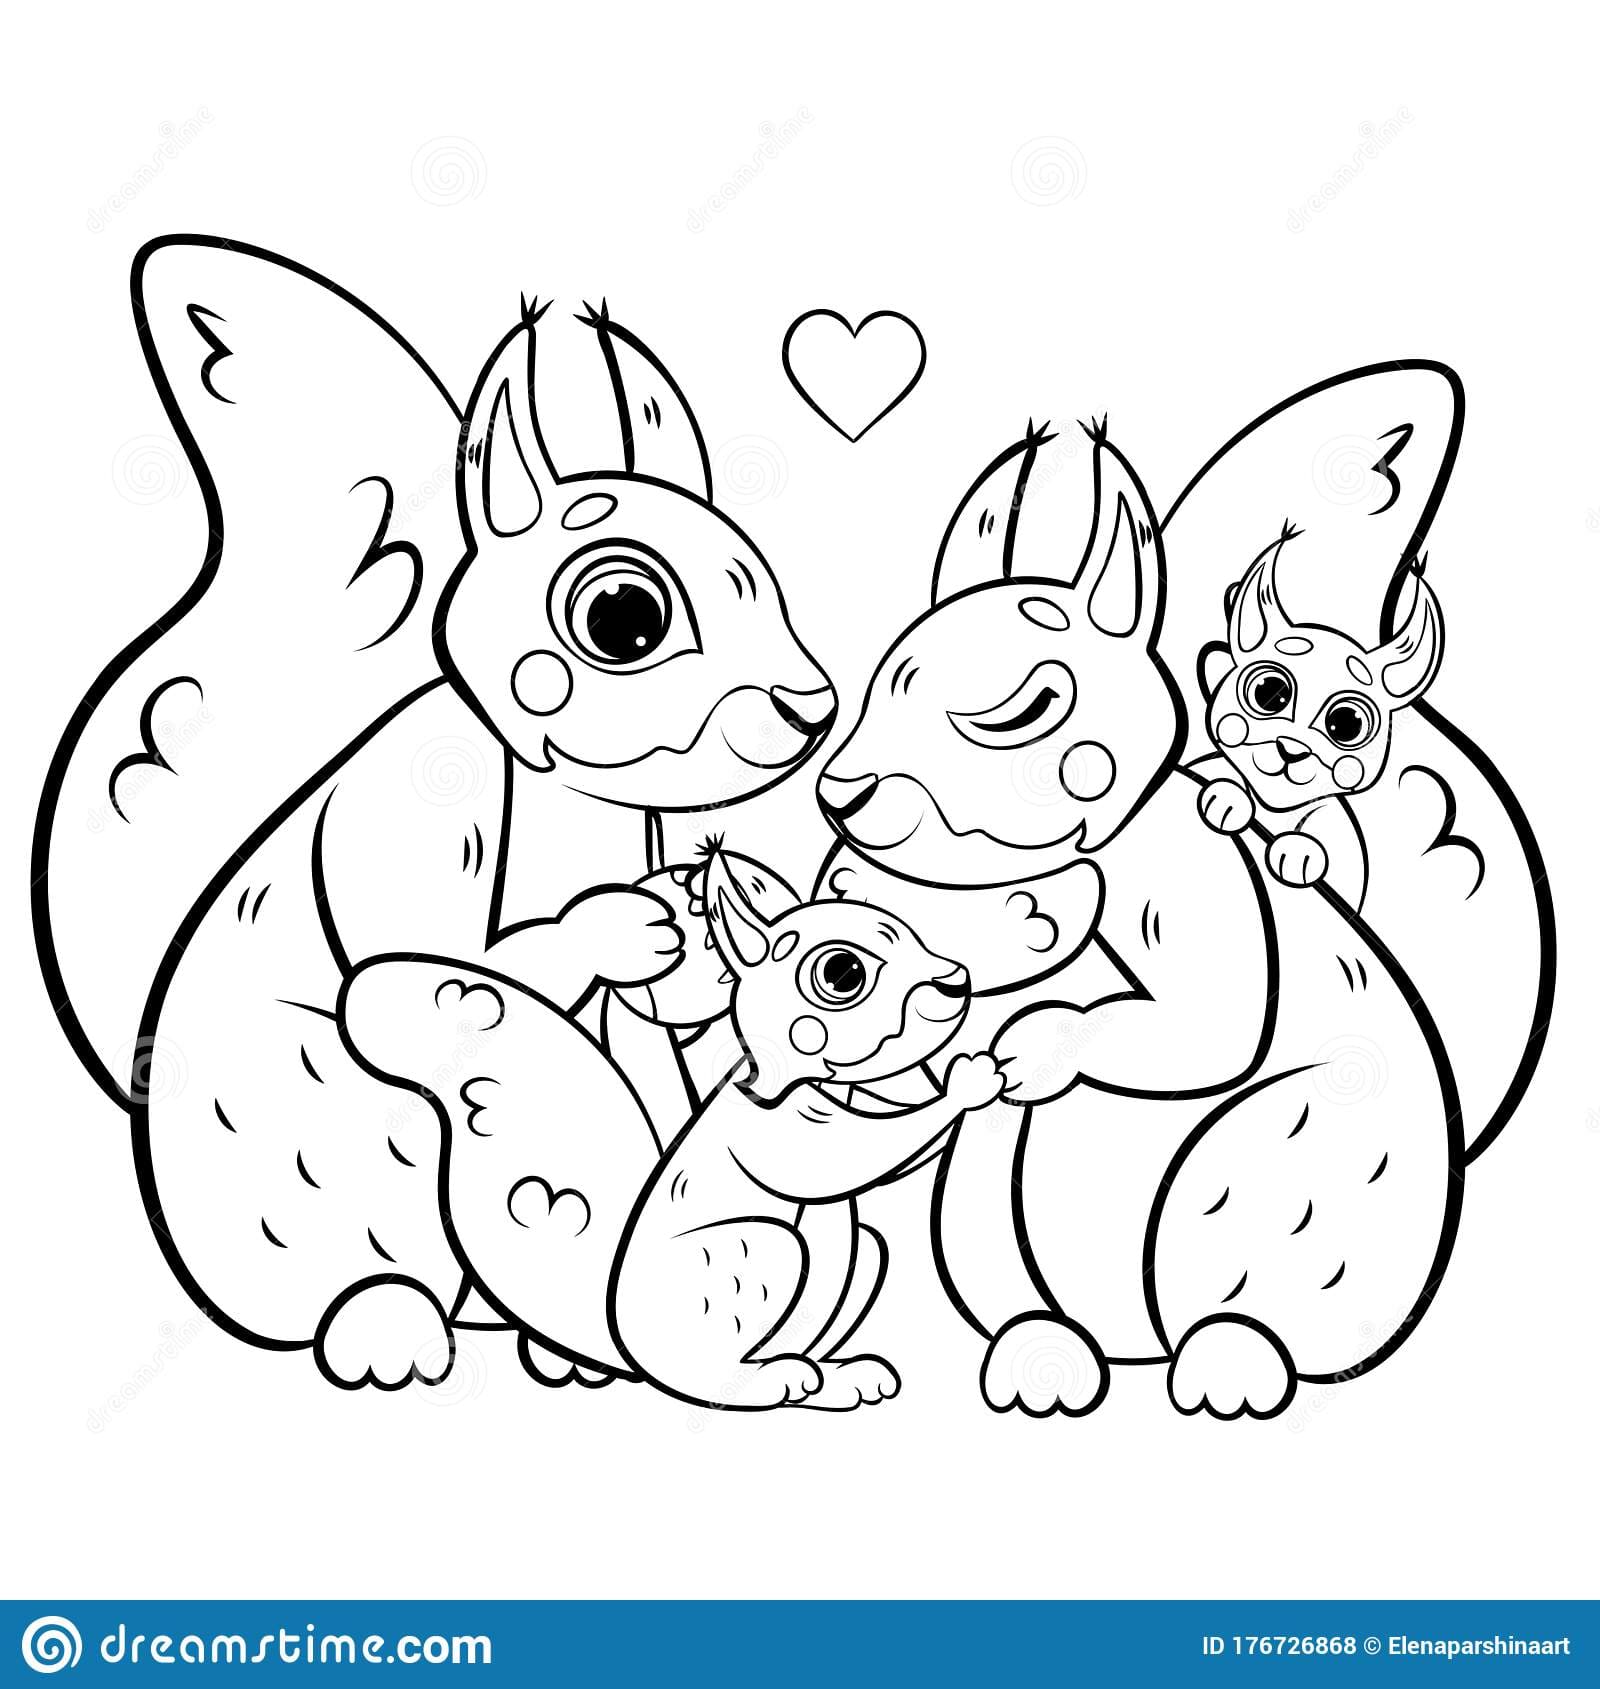 Cute Cartoon Squirrel Family